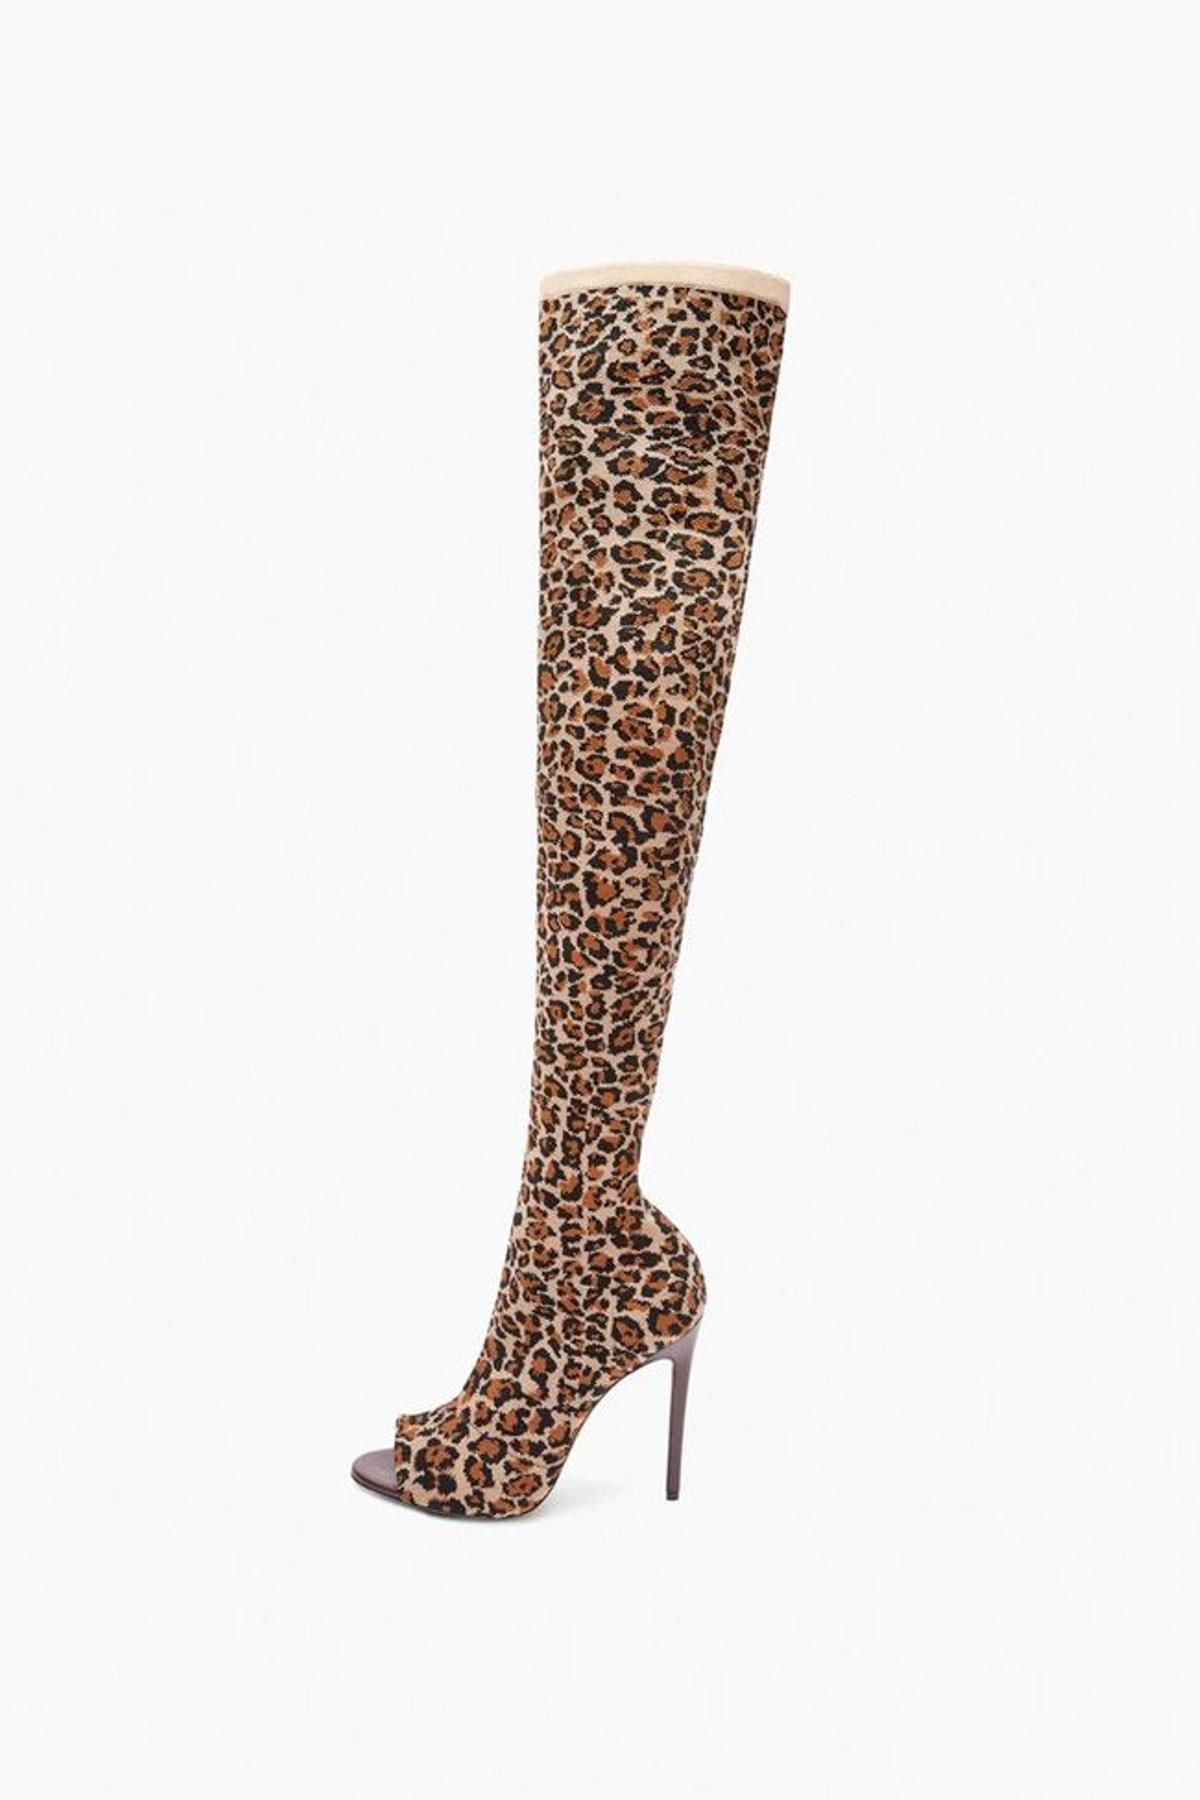 Botas altas de tacón de estilo calcetín y sin puntera con estampado de leopardo, de Victoria Beckham